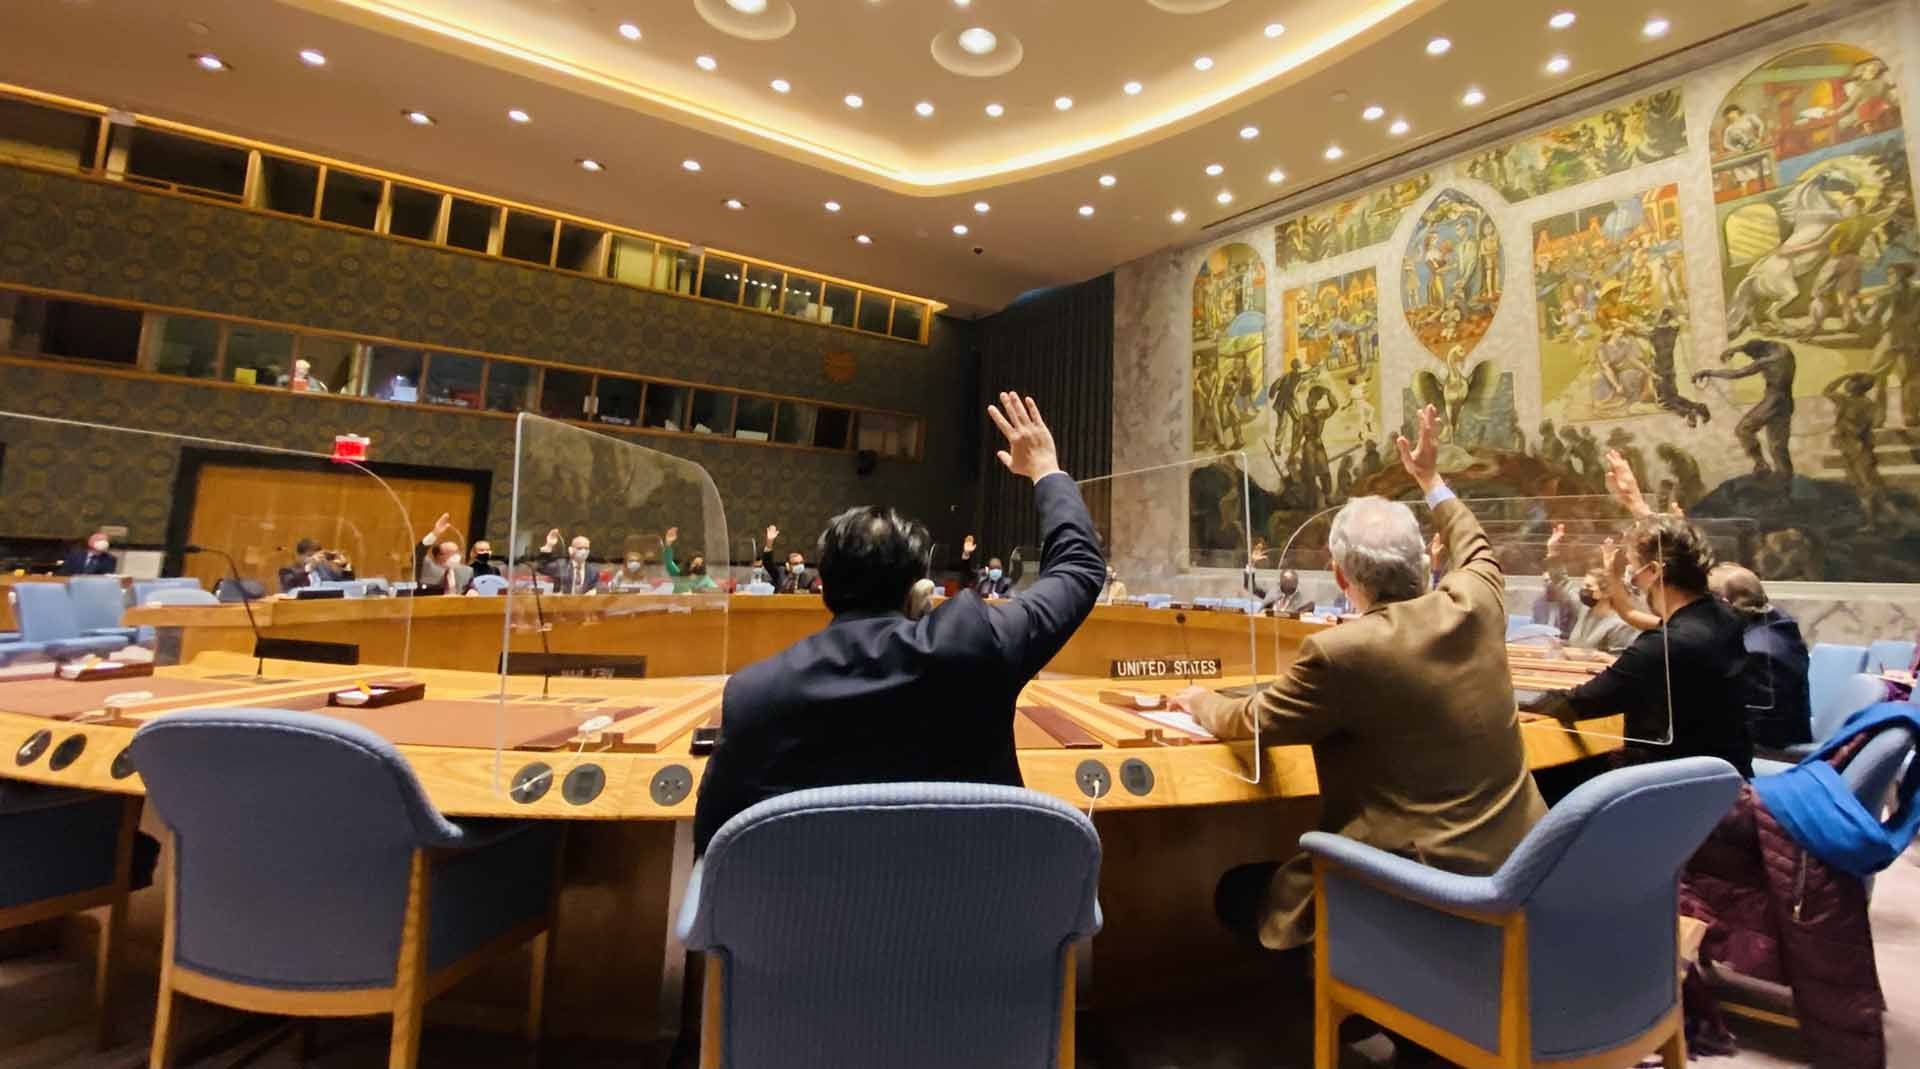 Hội đồng Bảo an Liên hợp quốc (HĐBA LHQ) đã thông qua 2 nghị quyết liên quan tới hoạt động cứu trợ nhân đạo tại Afghanistan và tăng cường các biện pháp cấm vận vũ khí bất hợp pháp tại một số địa bàn trong chương trình nghị sự của HĐBA.